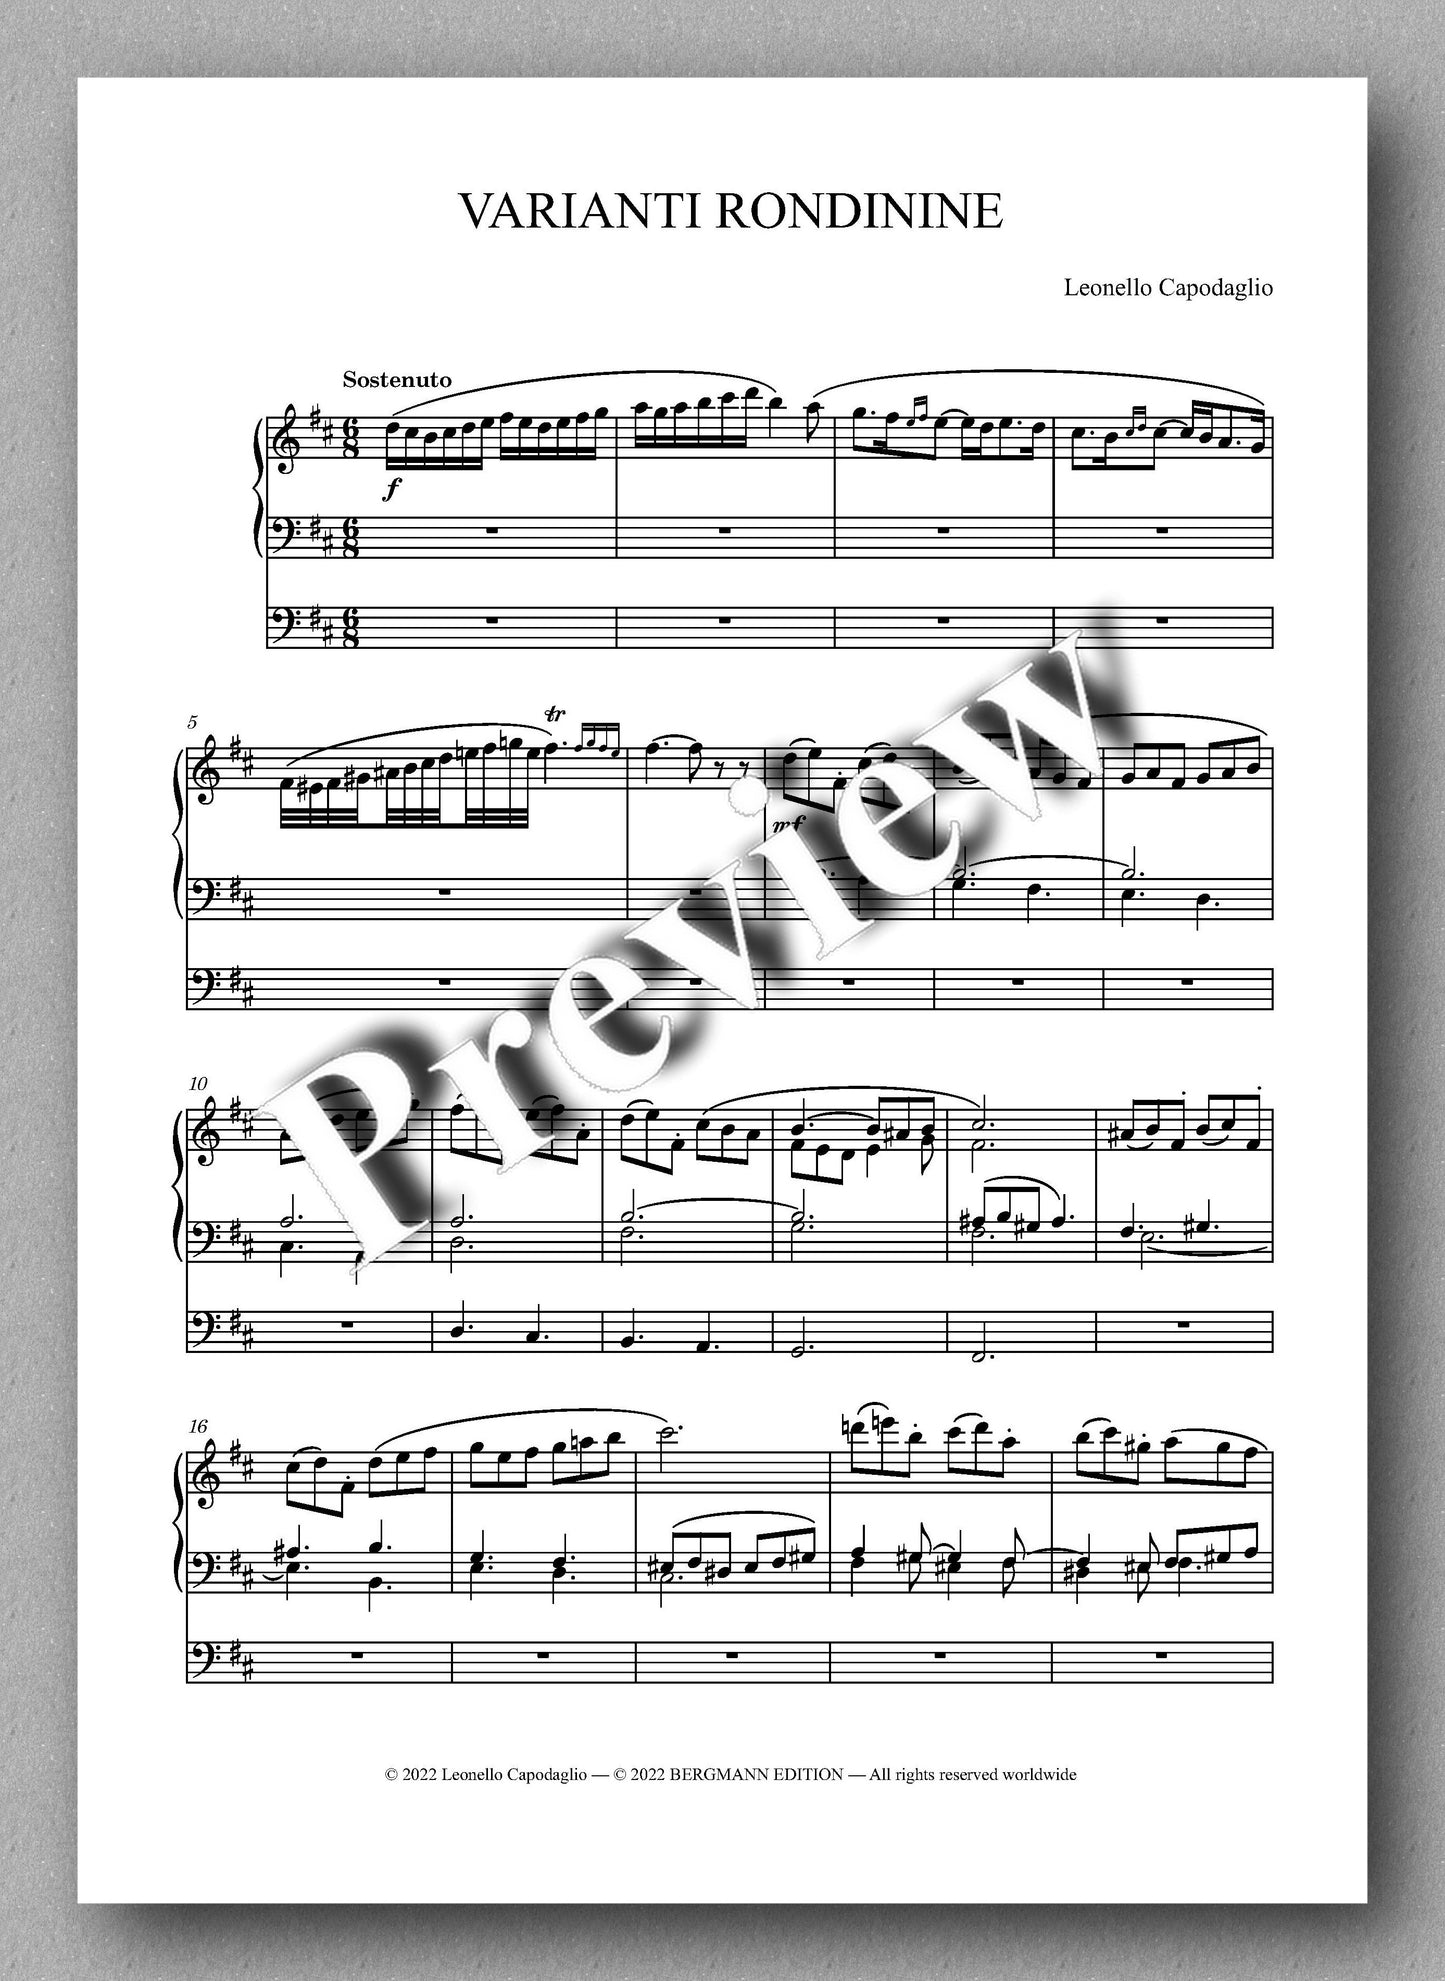 VARIANTI RONDININE by  Leonello Capodaglio - preview of the music score 1